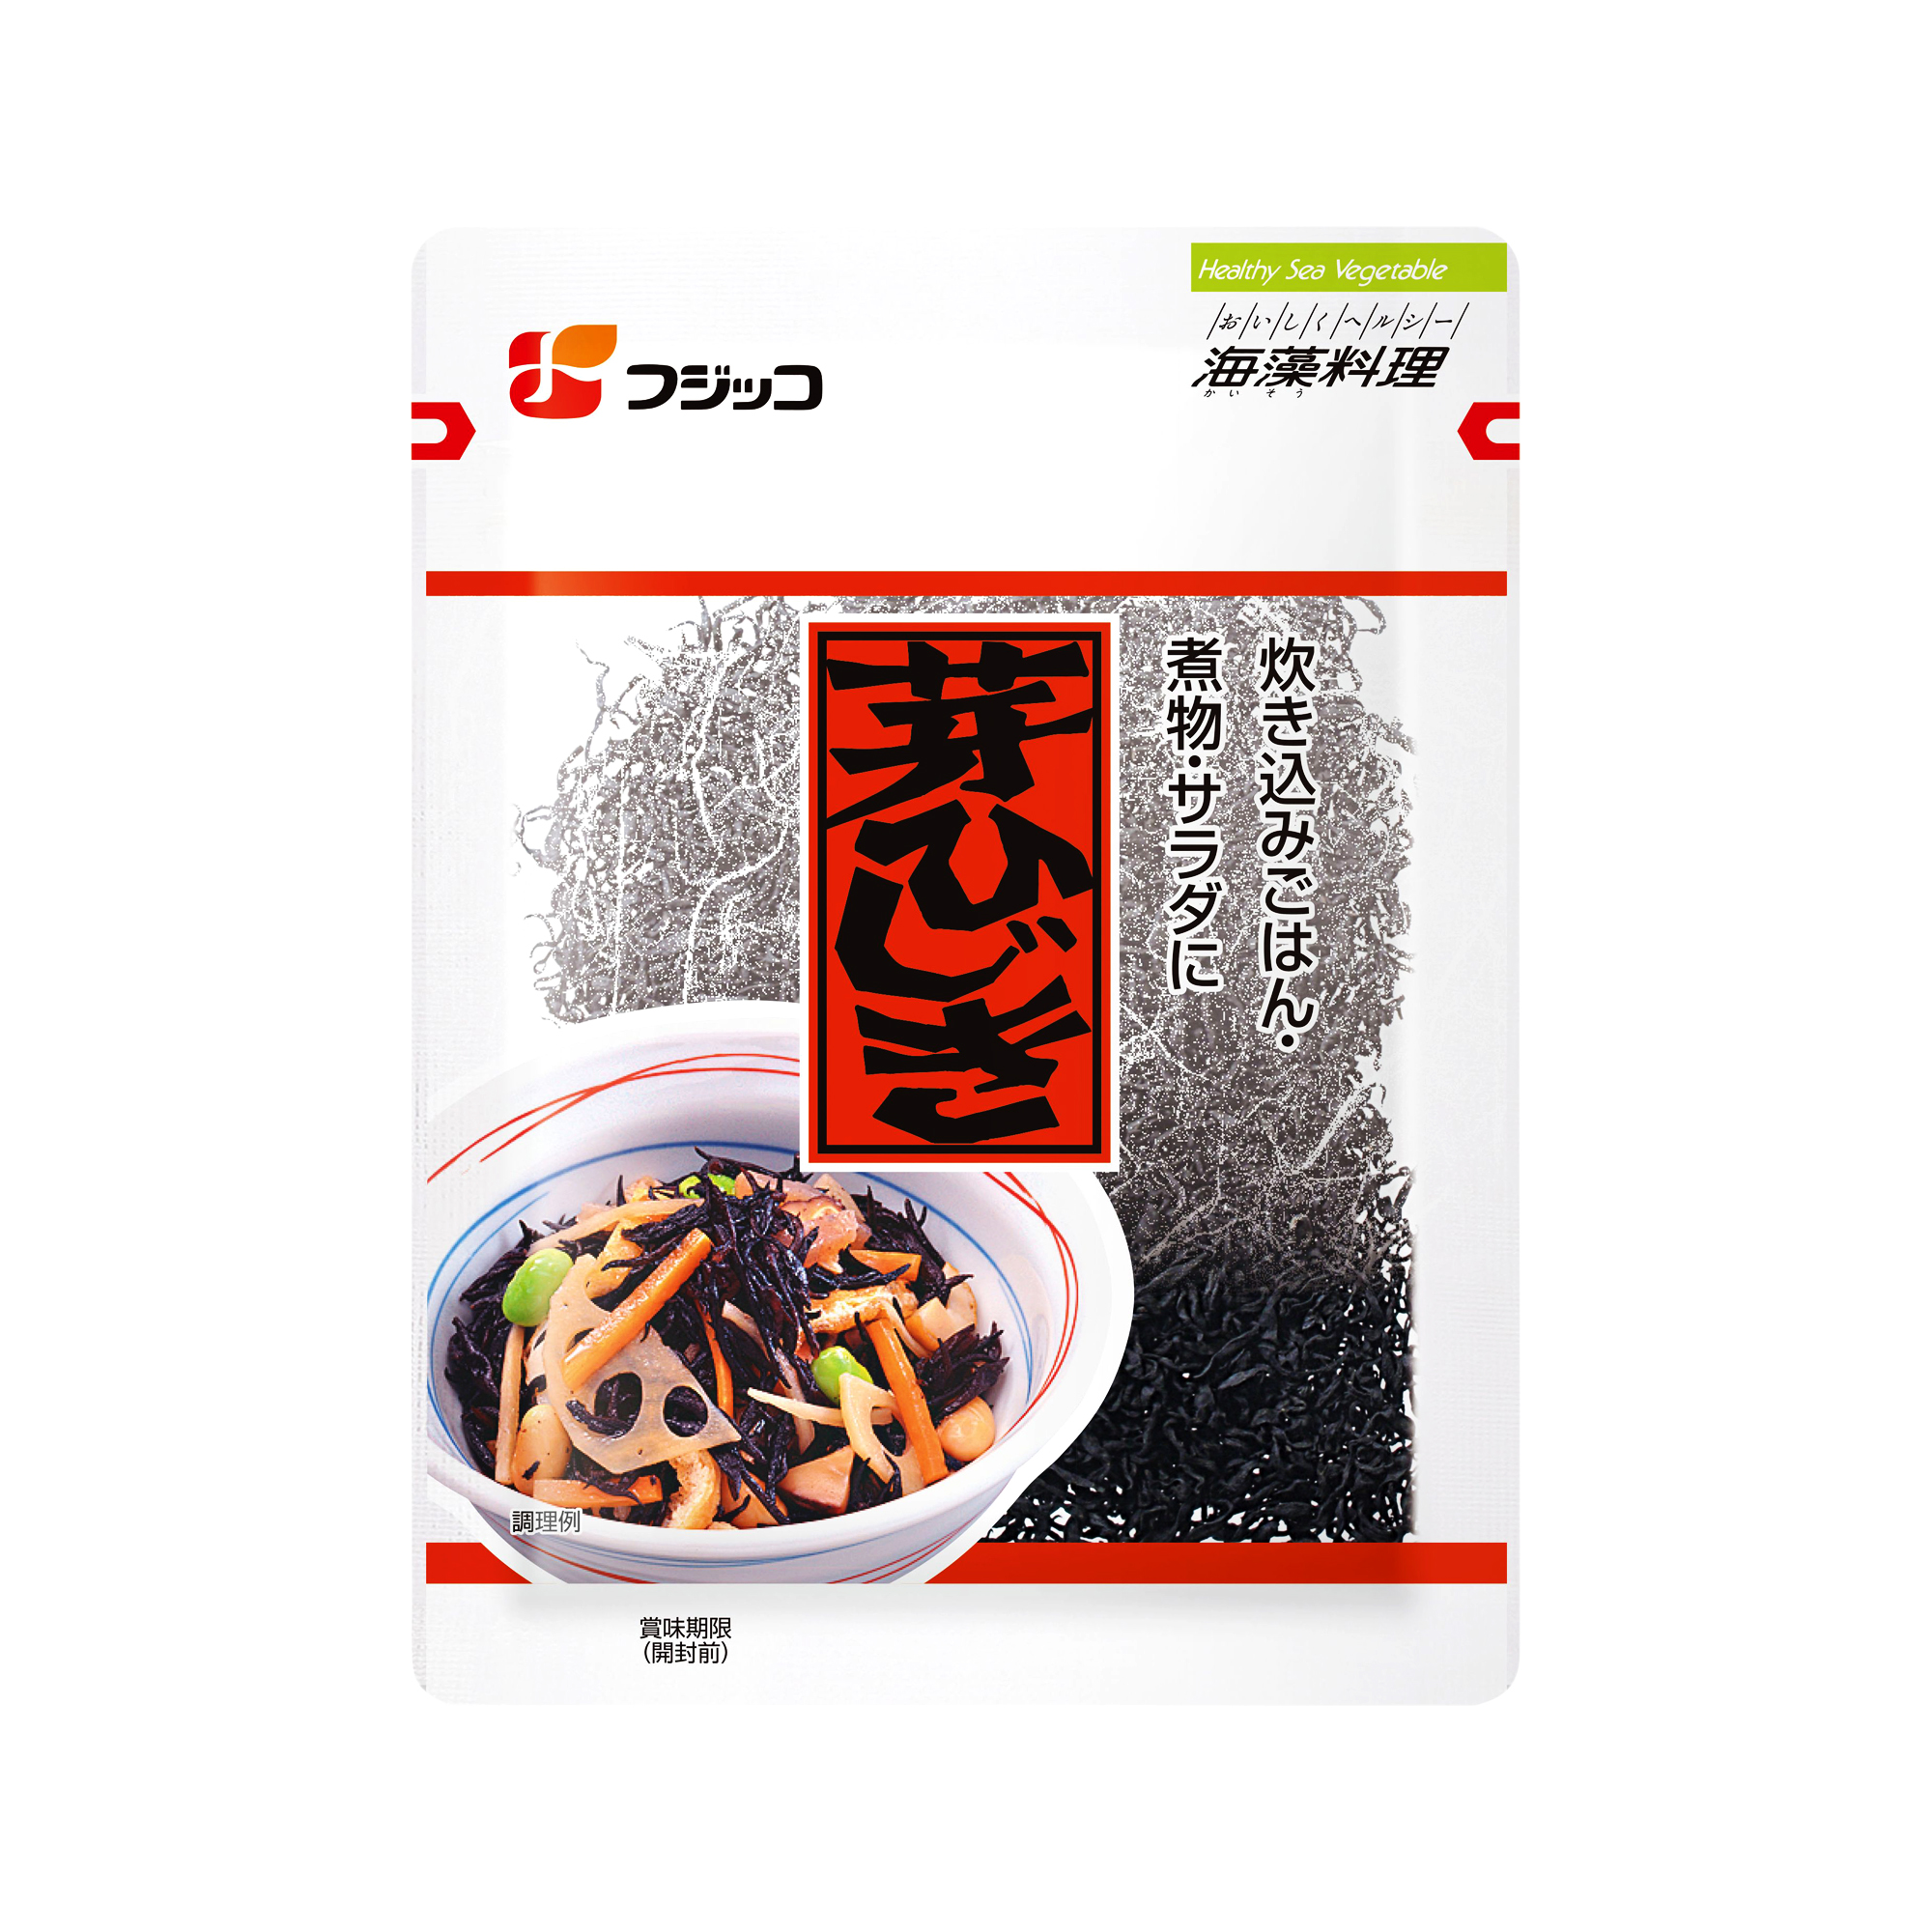 Fujicco Mehijiki Dried Bud Seaweed 20g